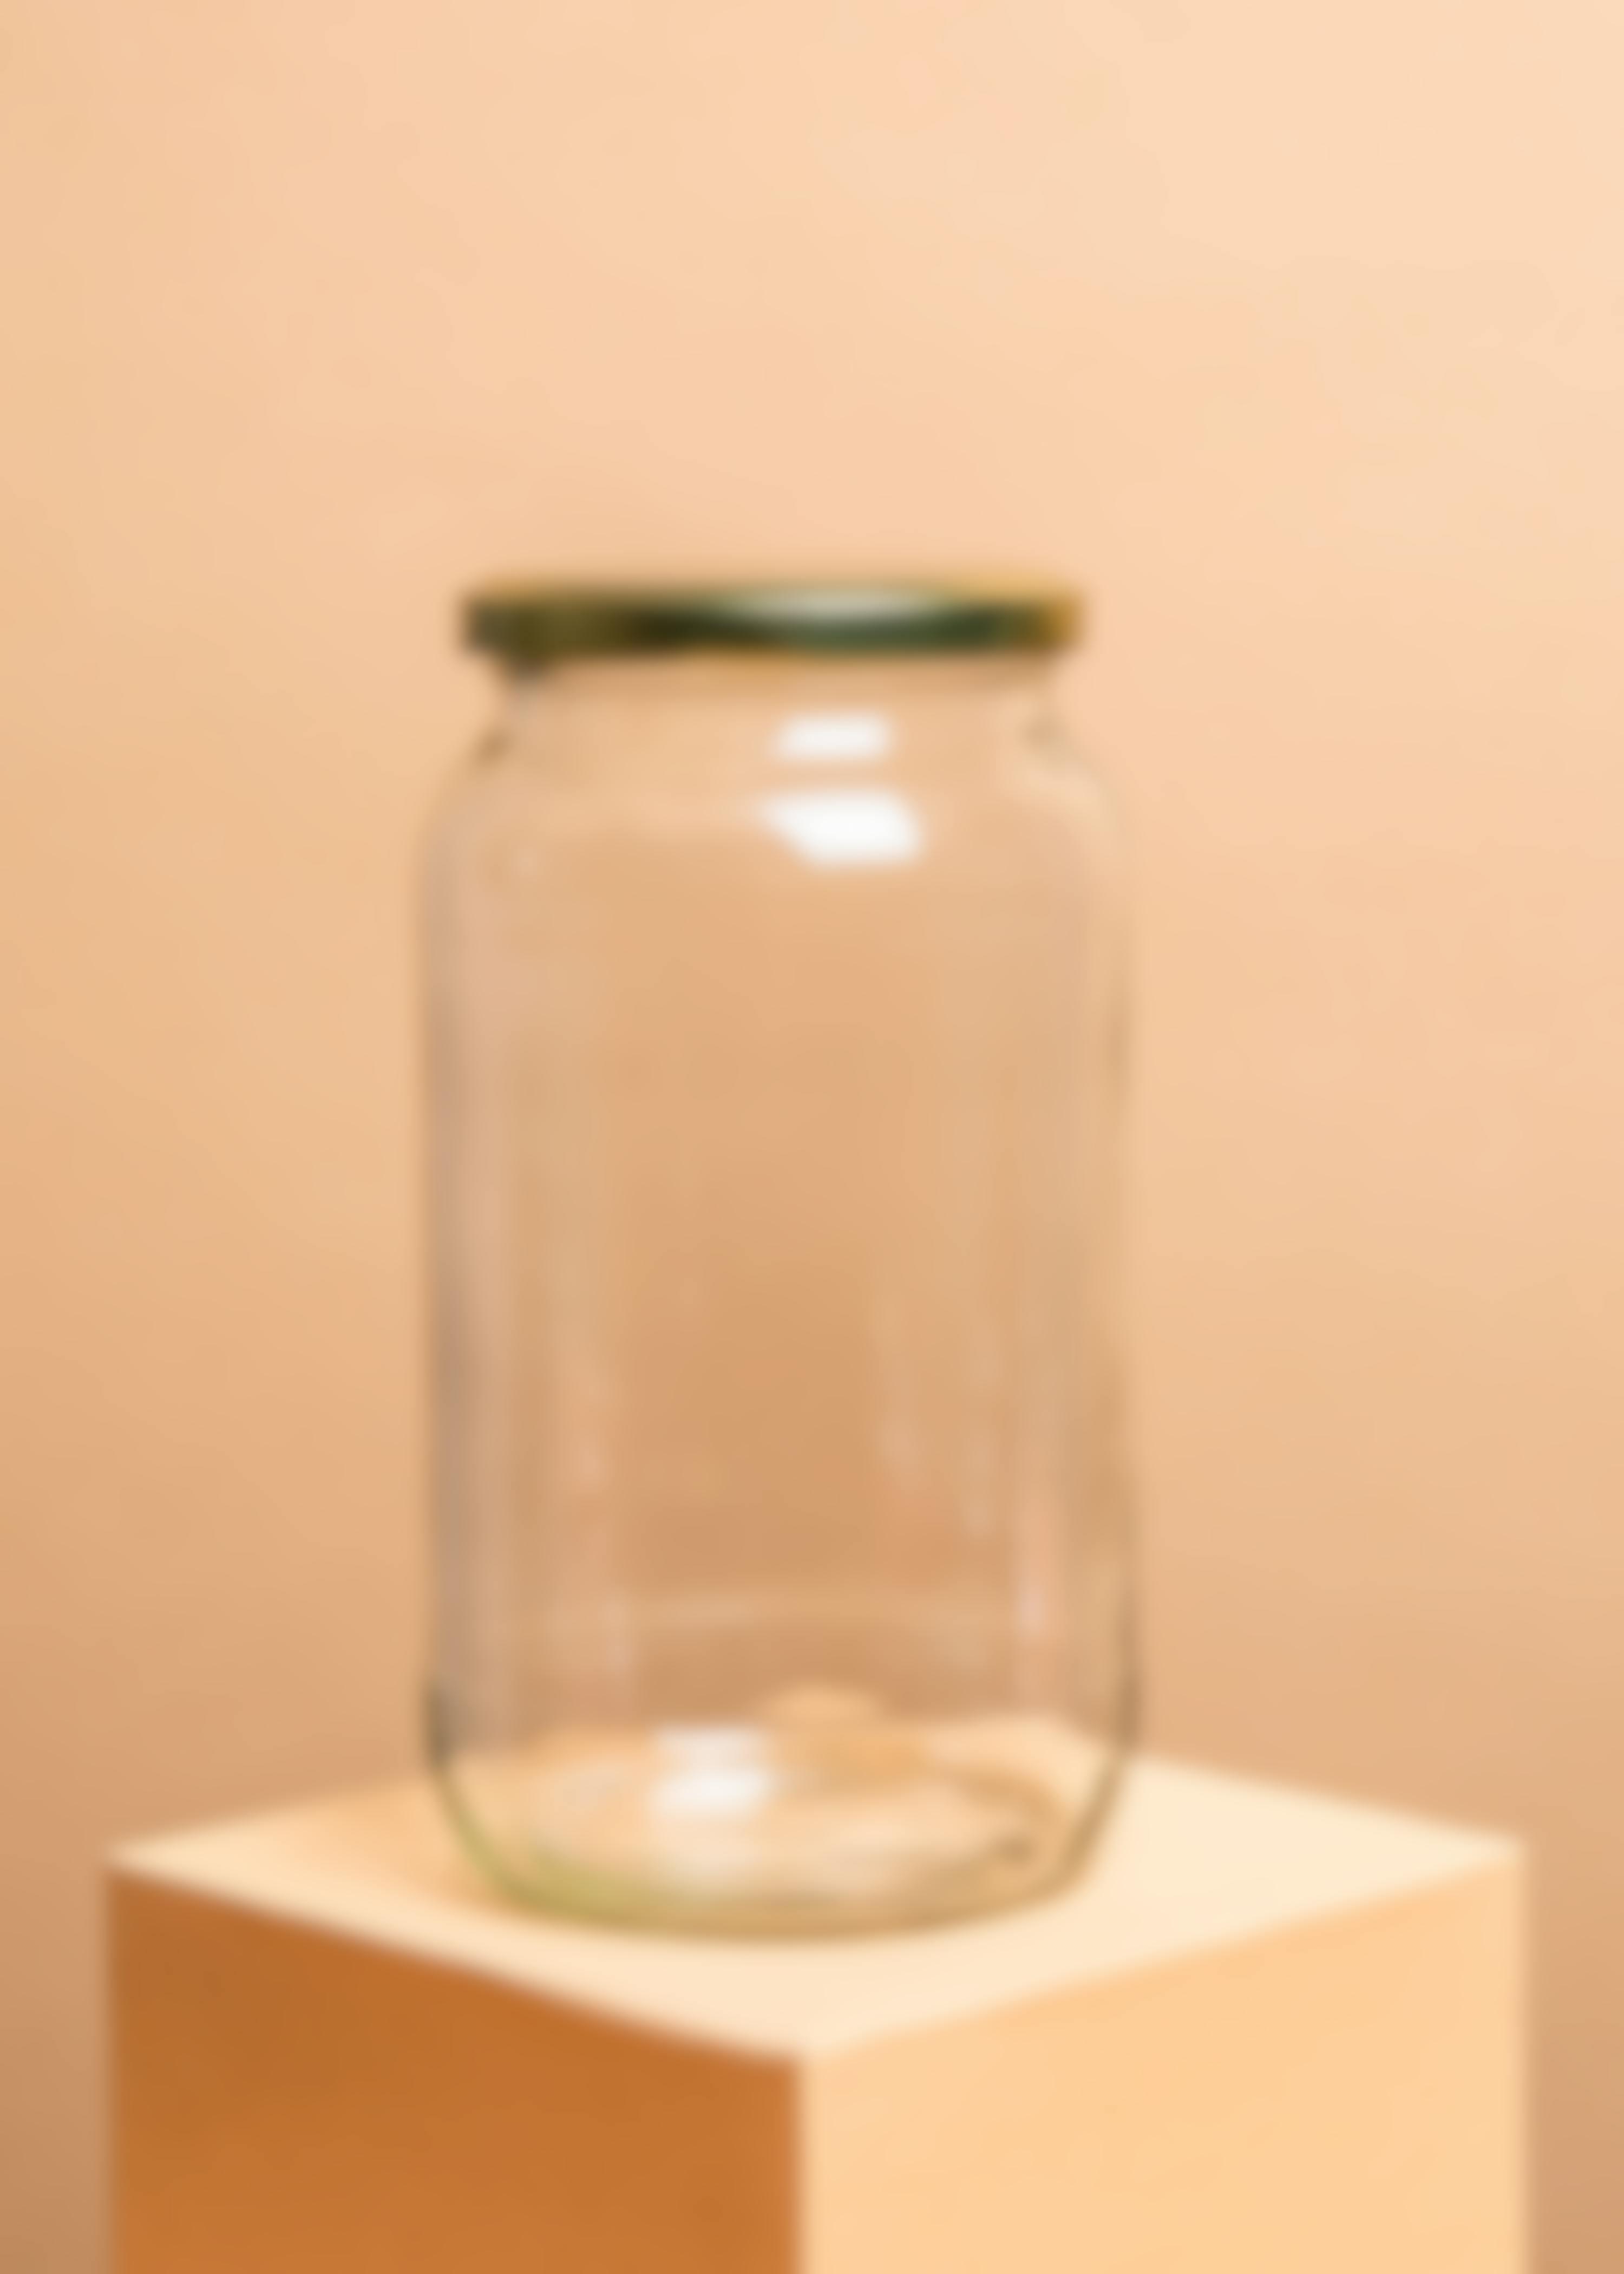 Barattolo di vetro da conserva | 1062 ml